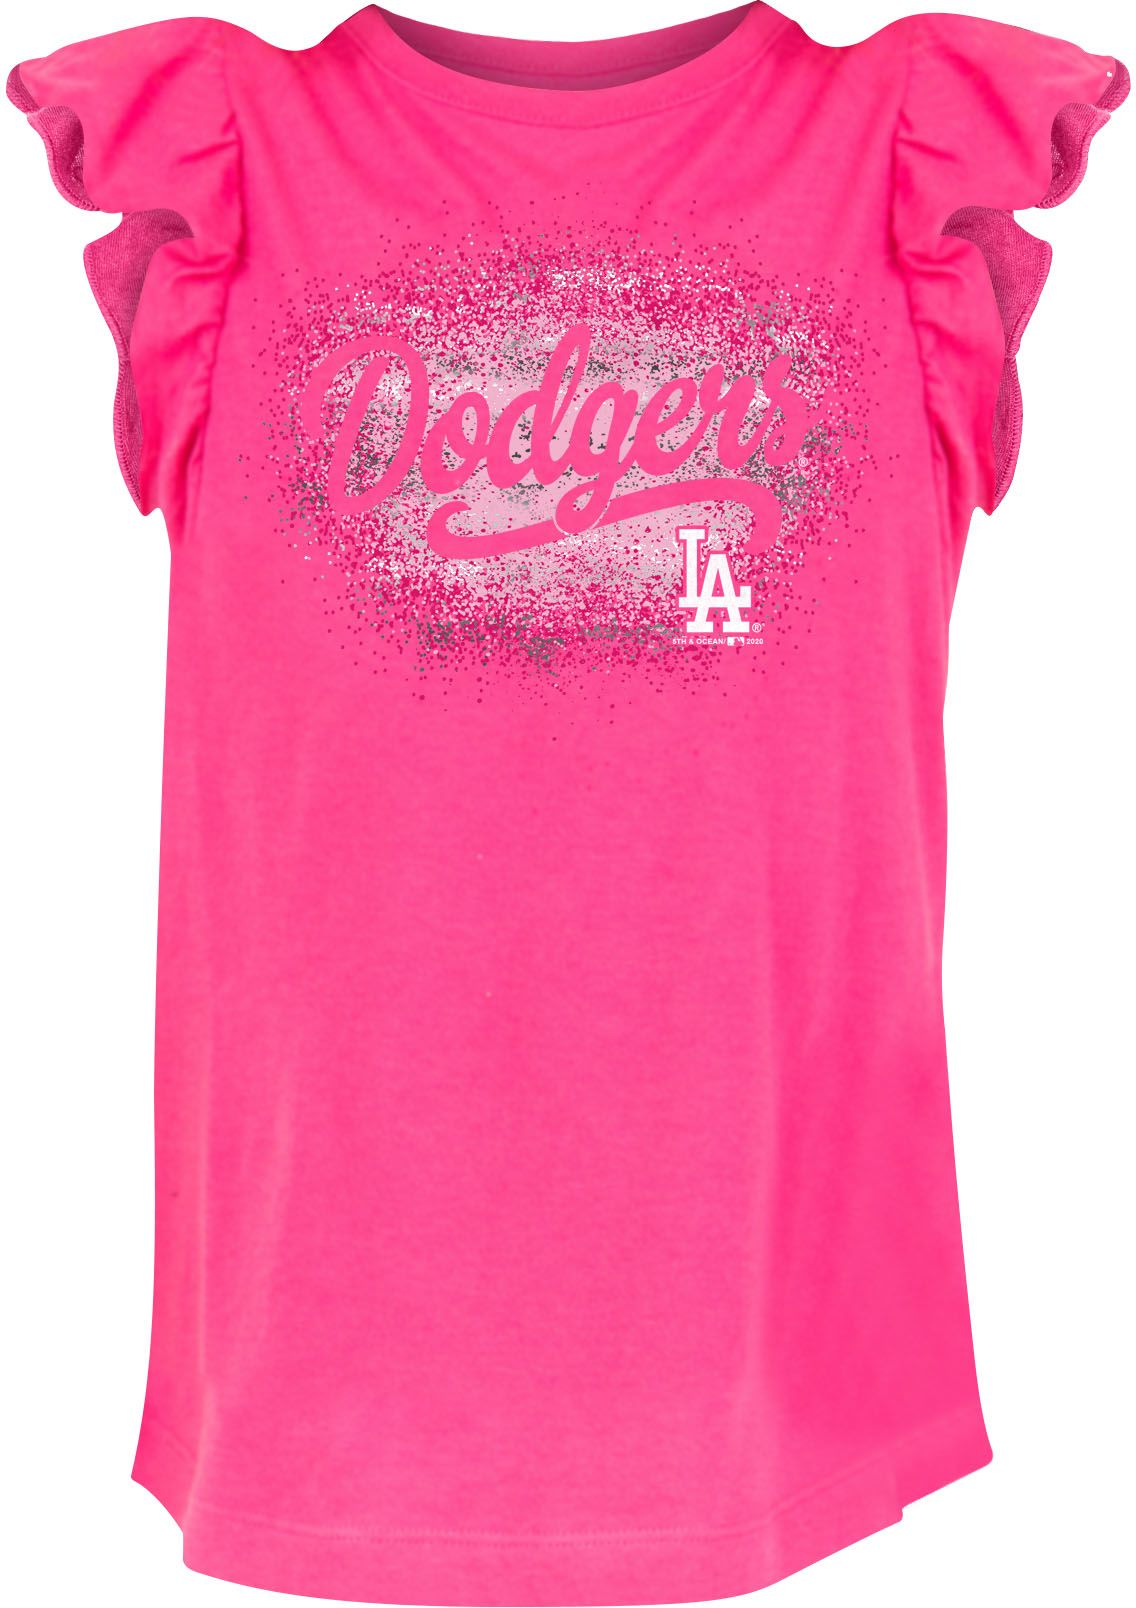 pink dodgers shirt